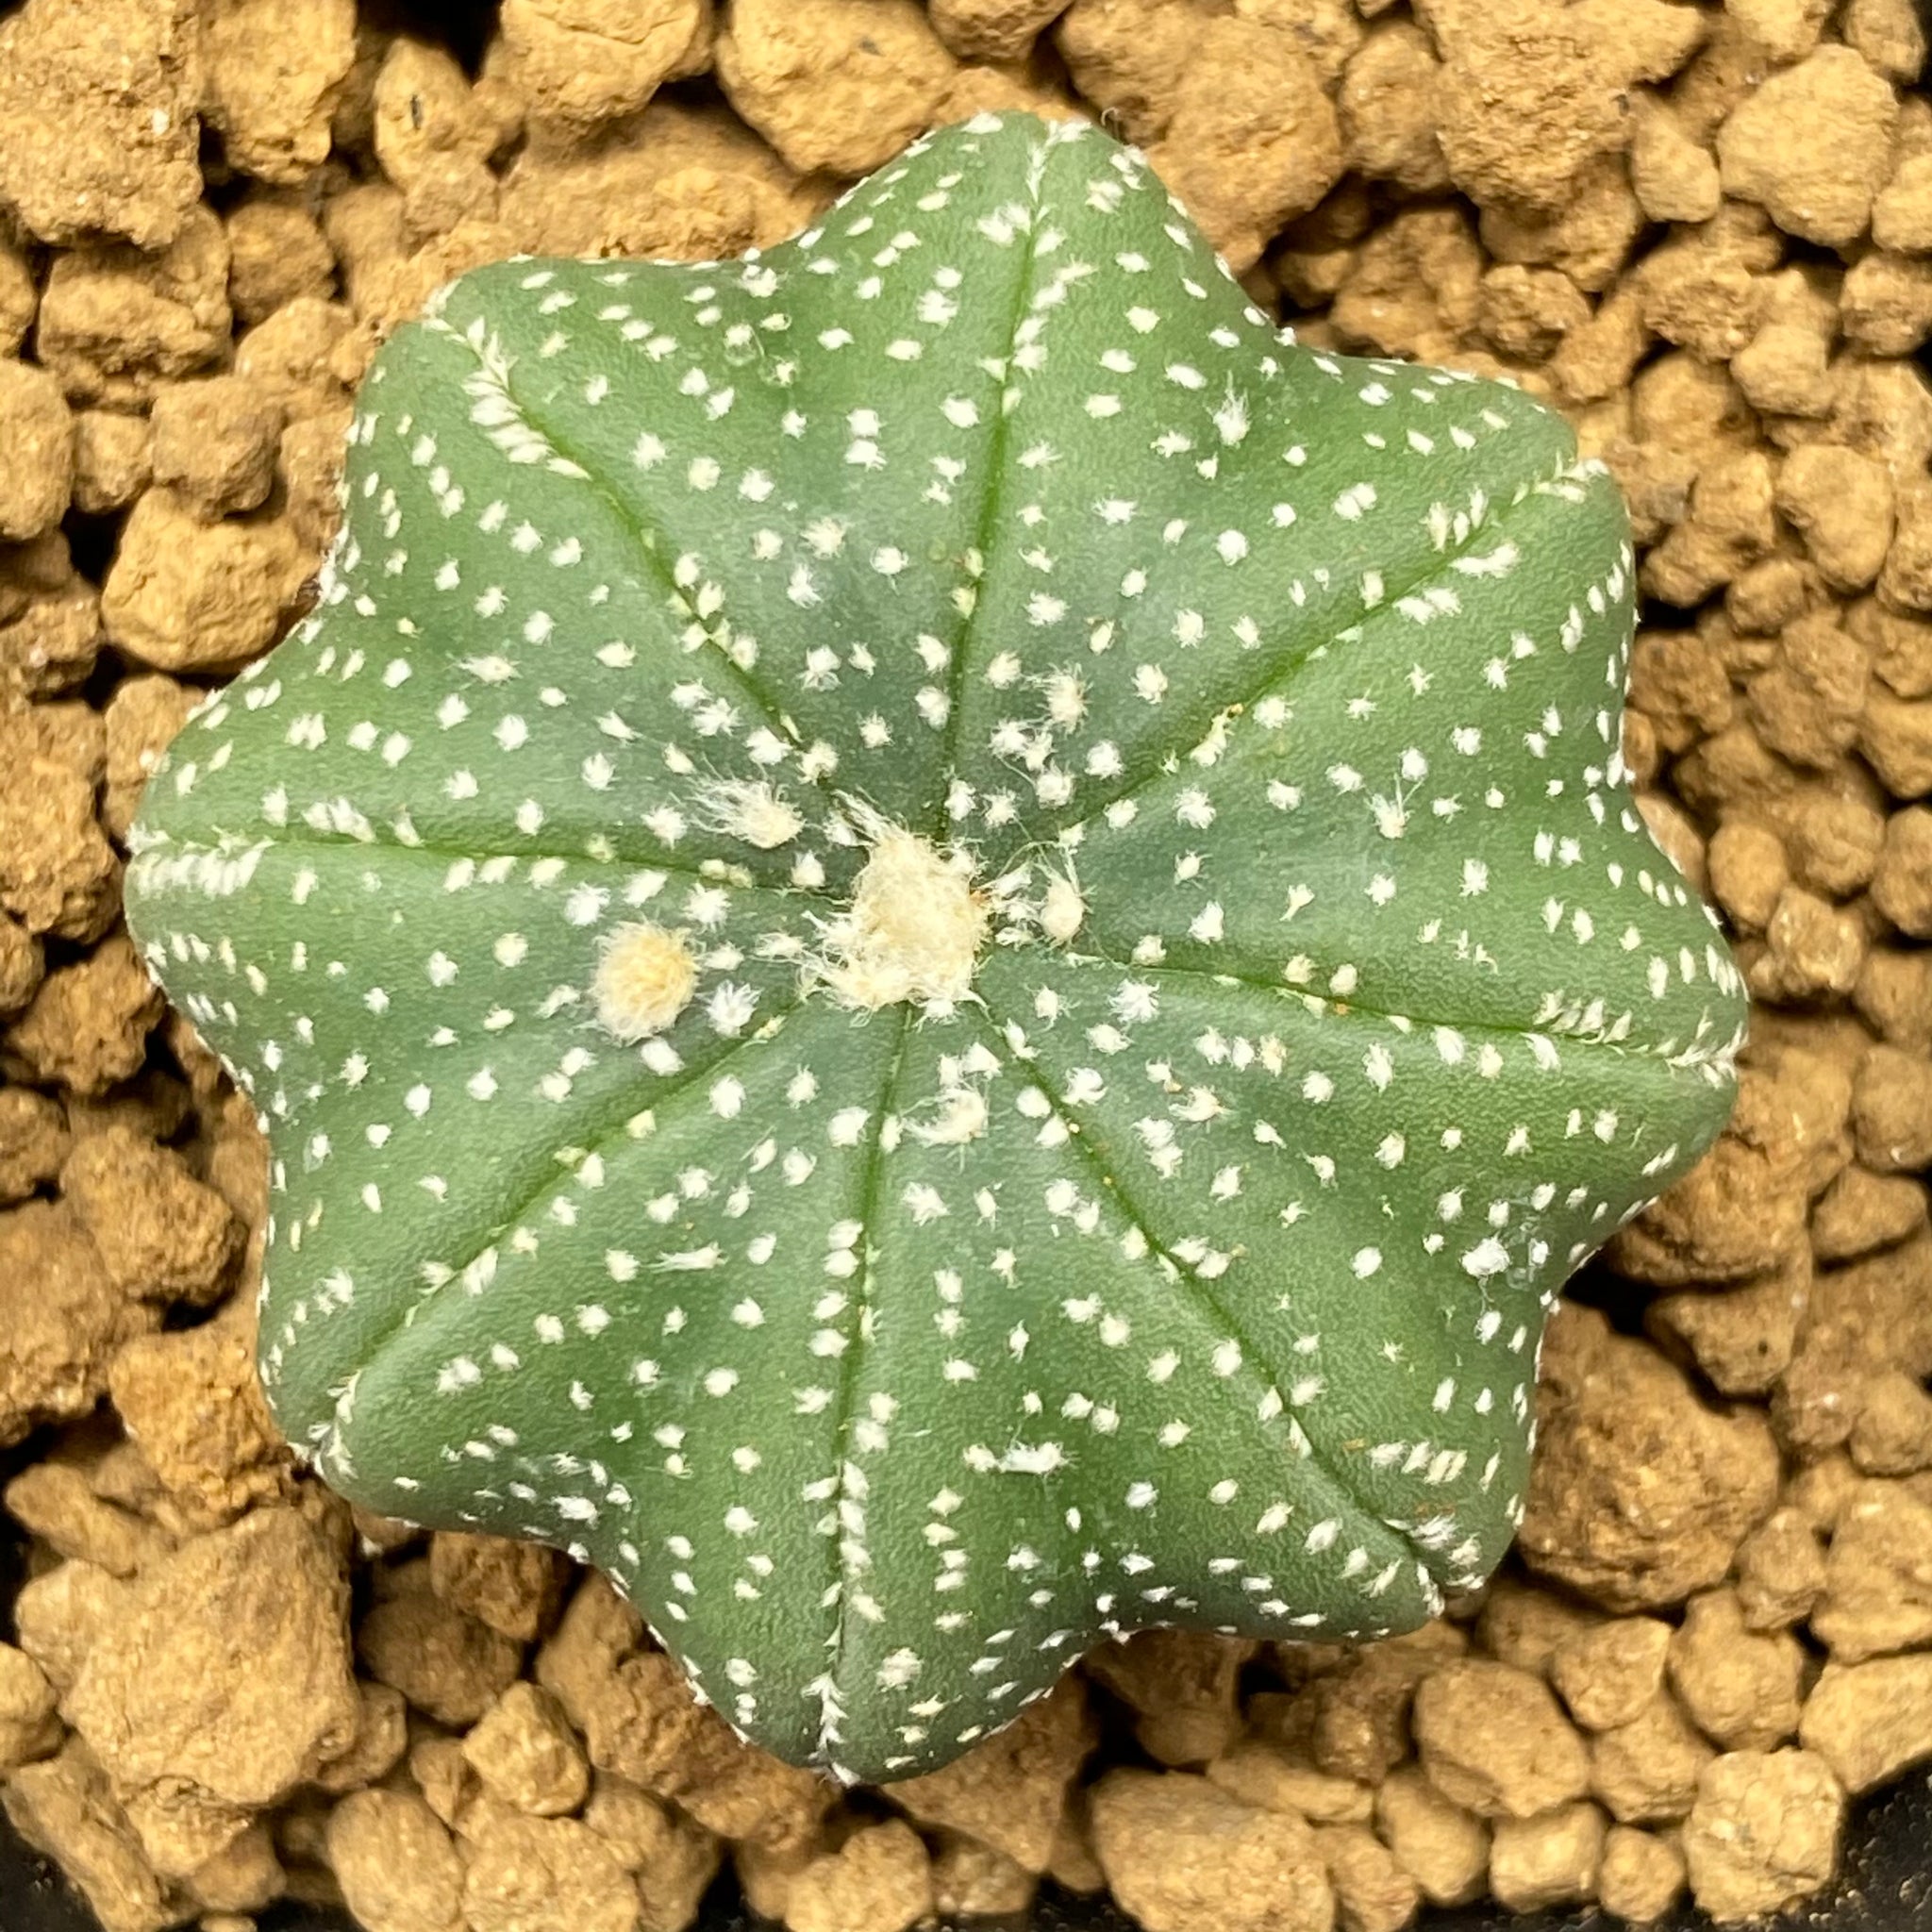 LILIBET: Astrophytum asterias kabuto